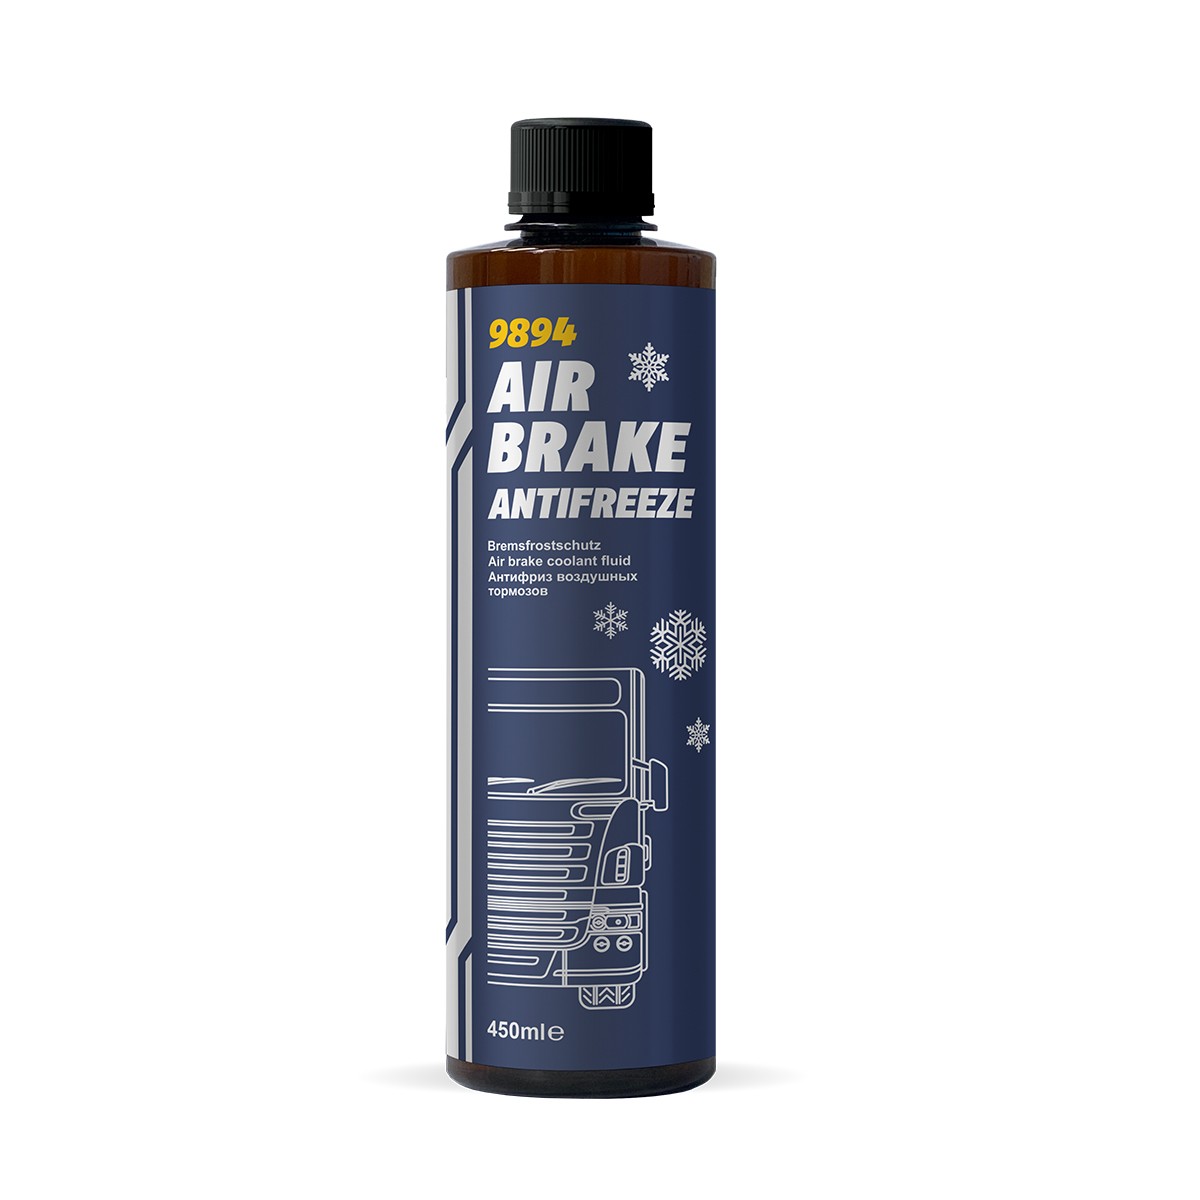 HONDA DAX Bremsflüssigkeit Inhalt: 450ml MANNOL Air Brake Antifreeze MN9894-045PET